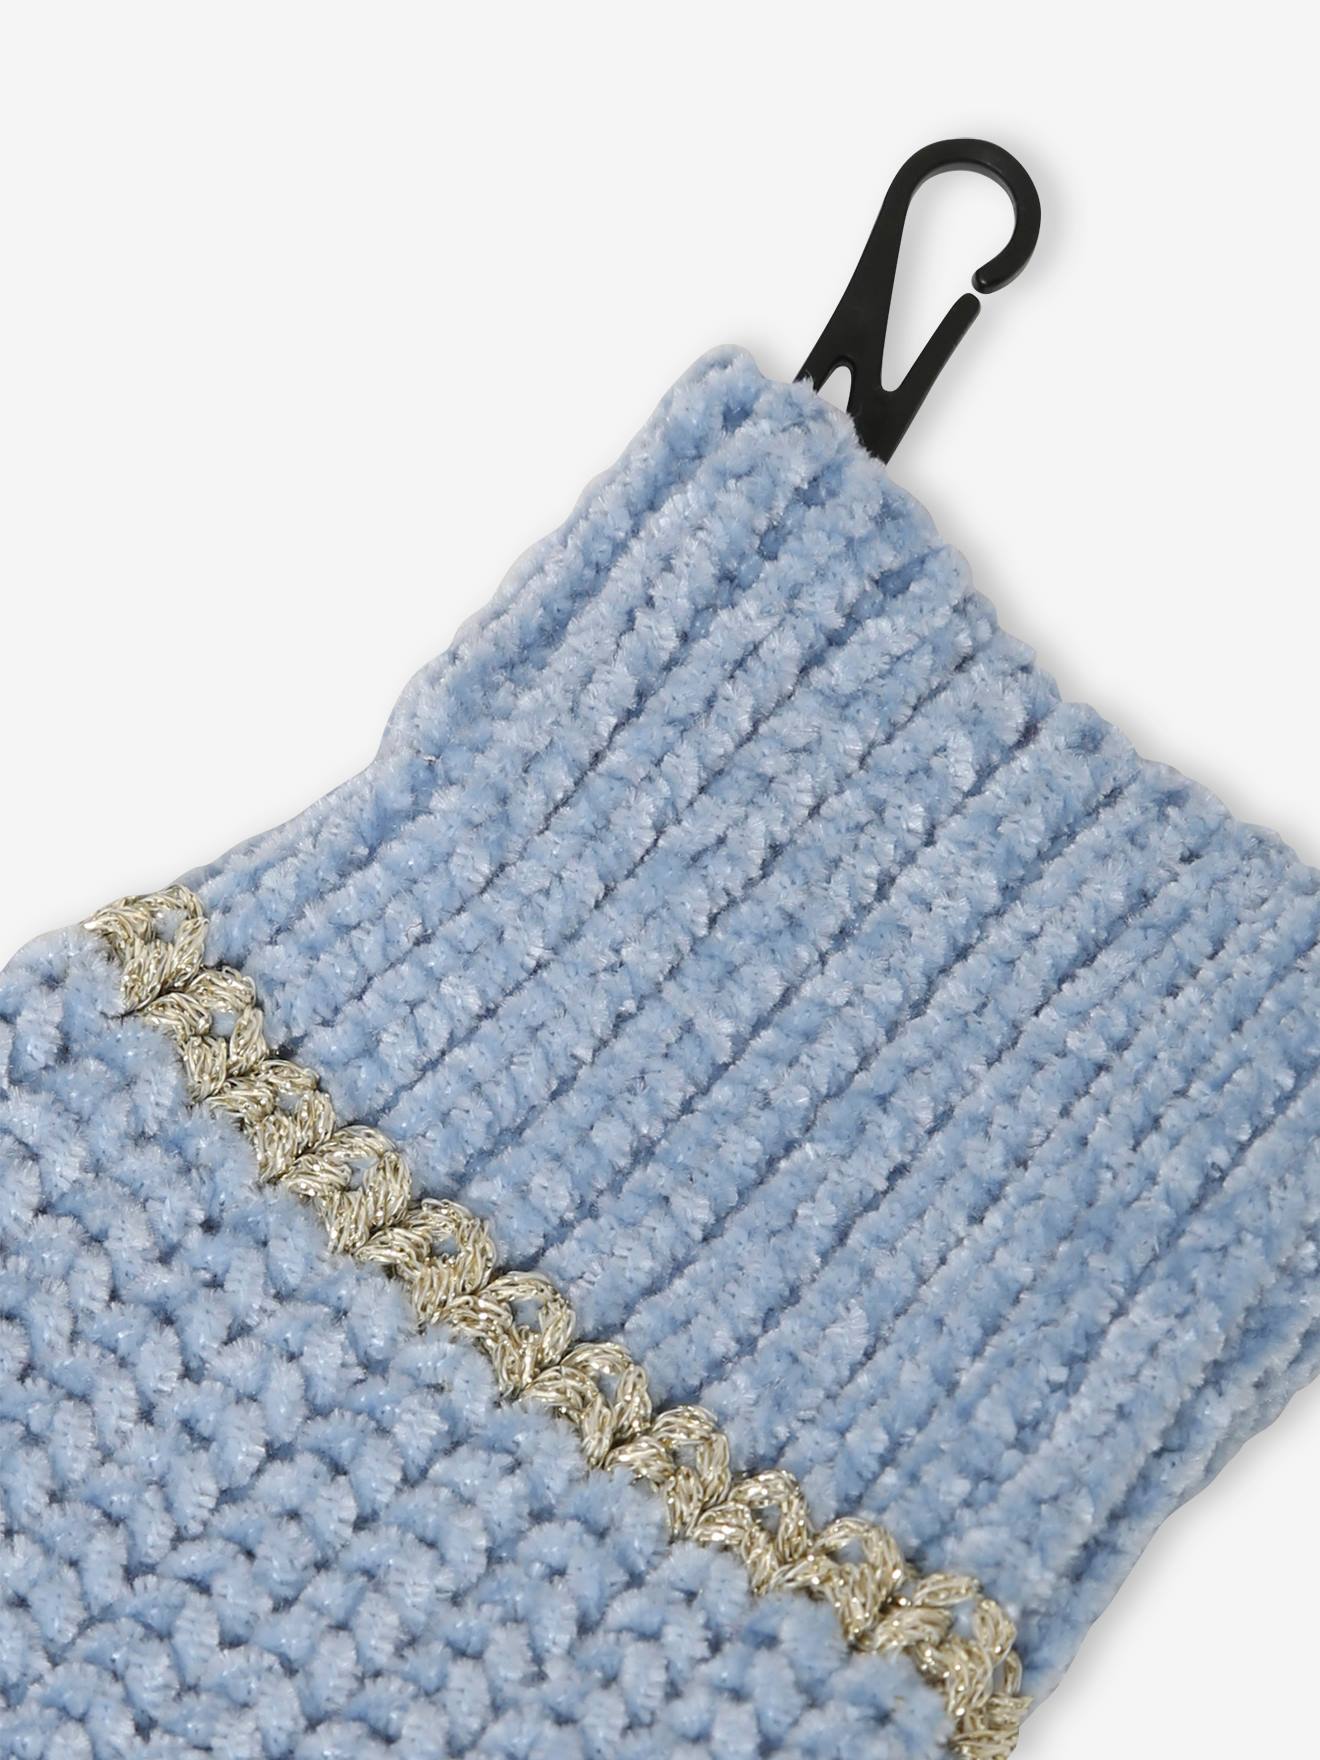 Snood / tour de cou enfant bleu marine etoile paillettee :  accessoires-autres-accessoires par farfadetsetcie